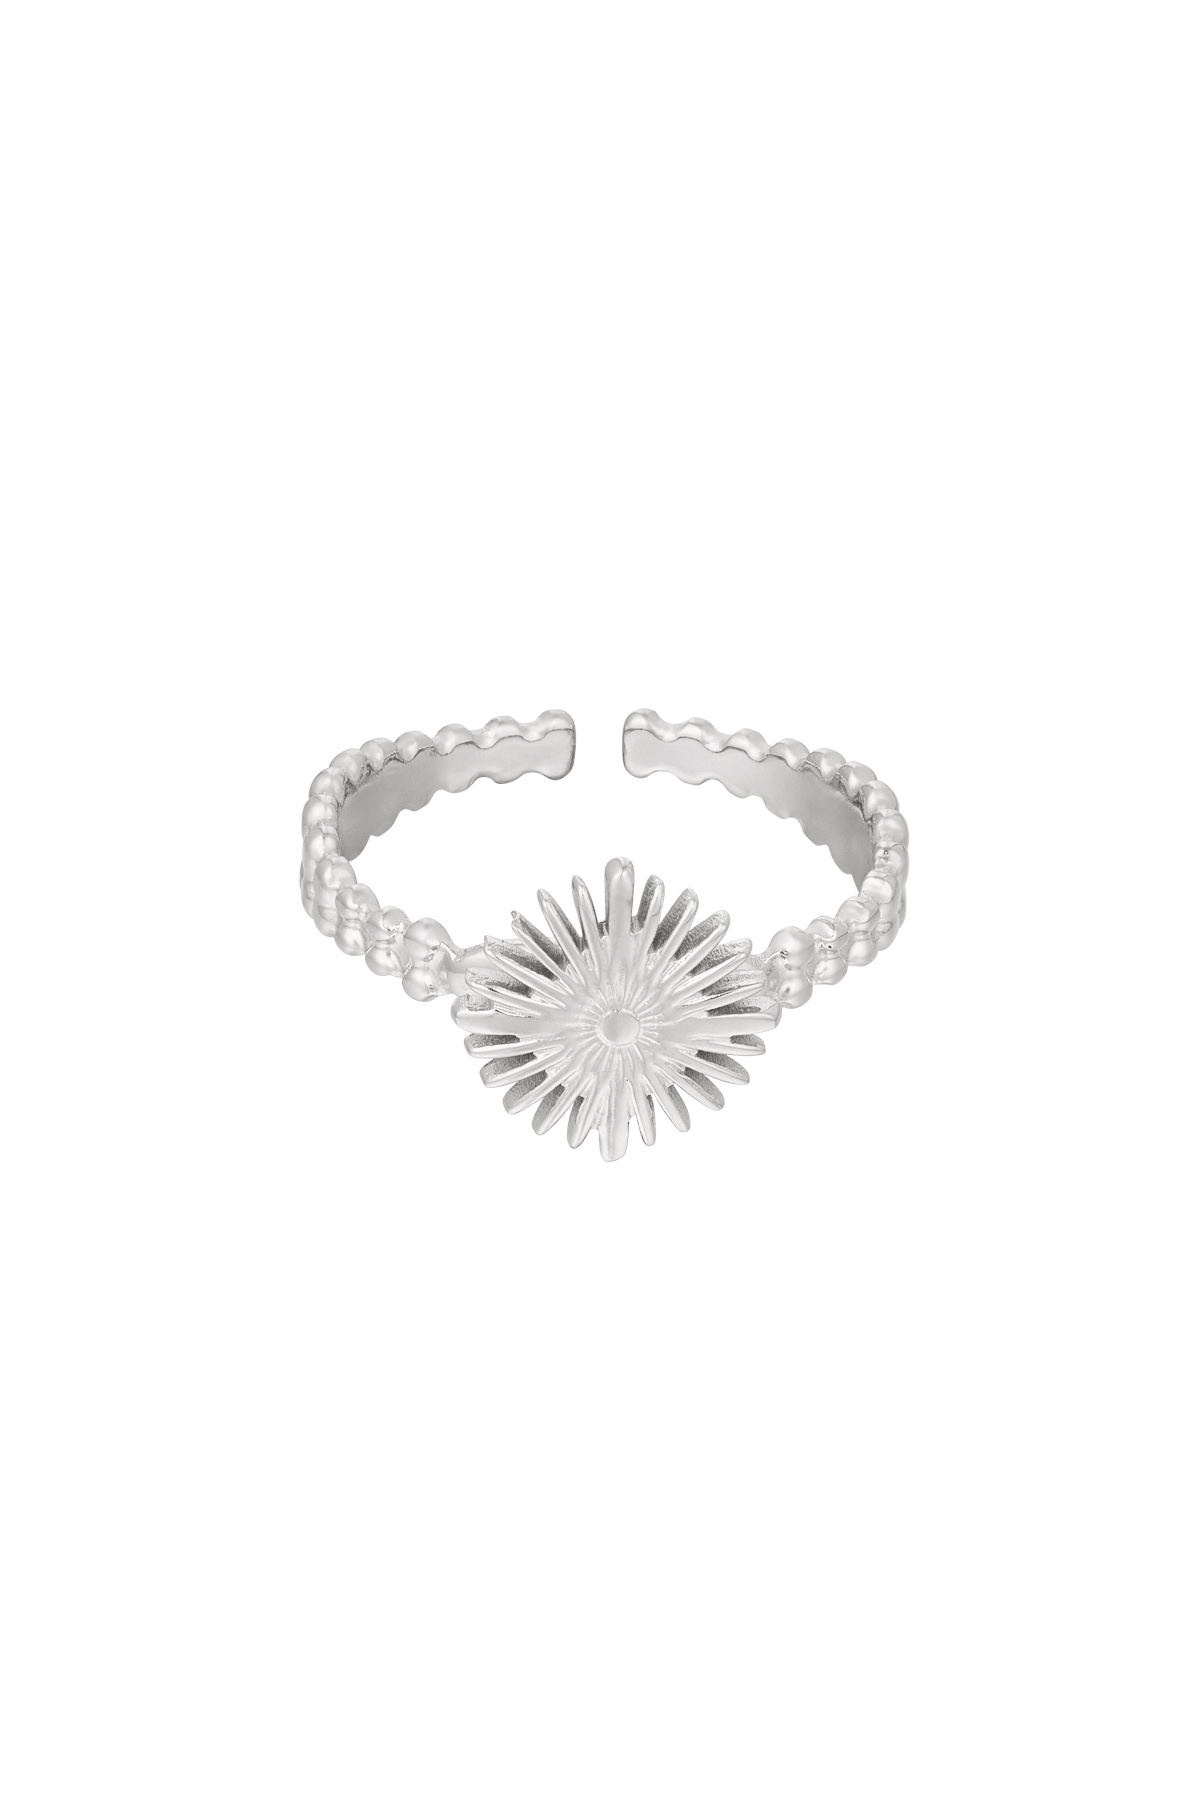 Ring Sonne - Silber Edelstahl h5 